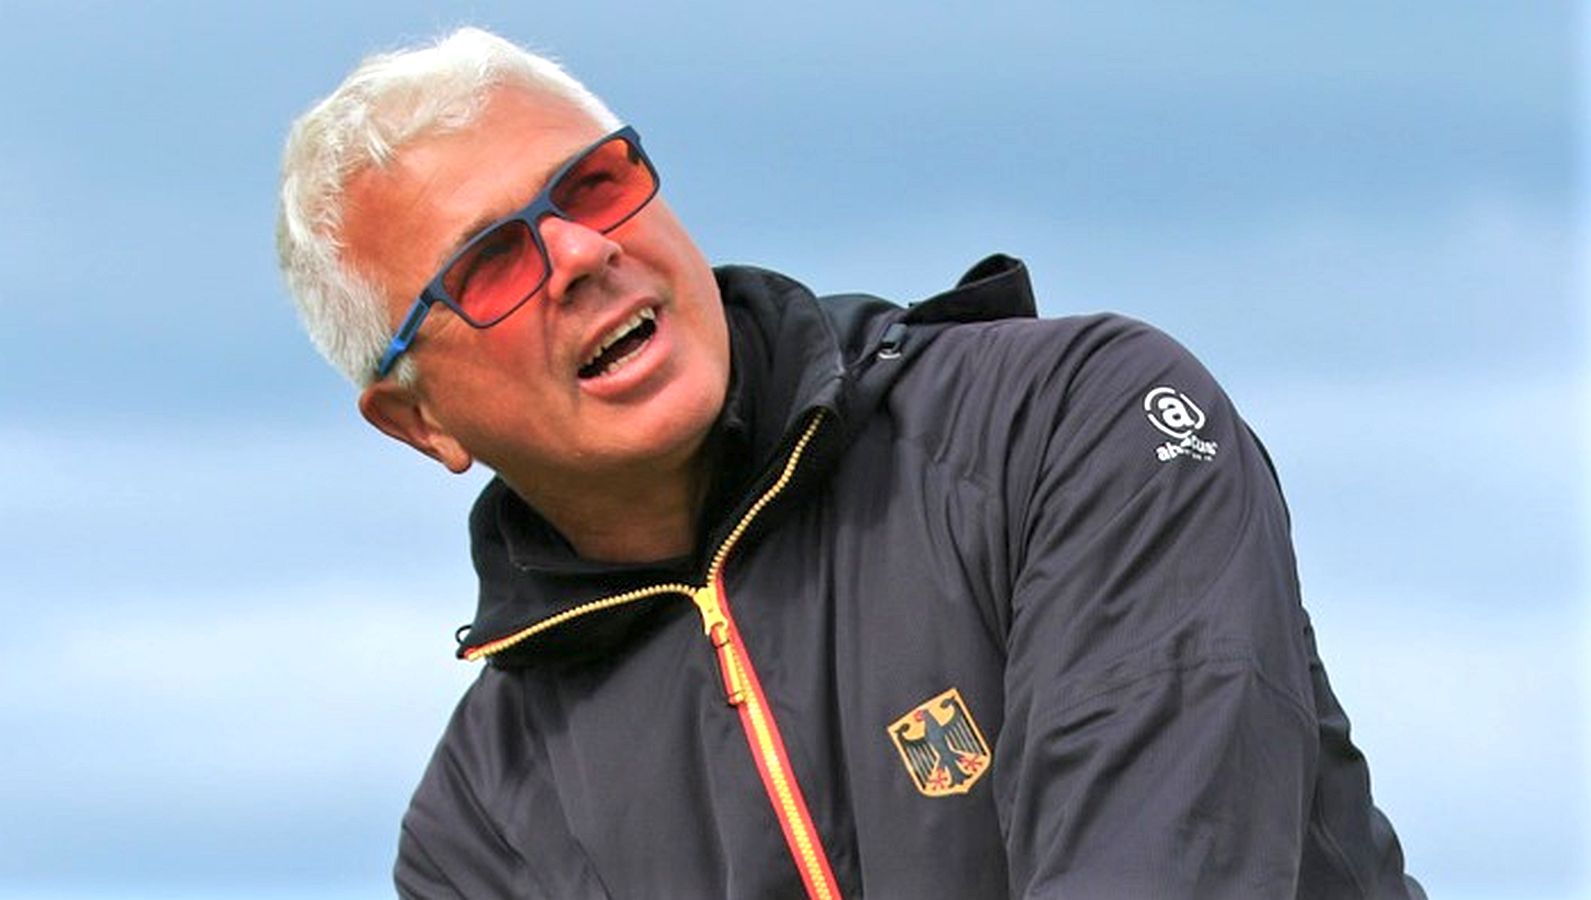 Herren-Bundestrainer Uli Eckhardt sieht den Golfsport in Deutschland auf dem richtigen Weg. © DGV/stebl